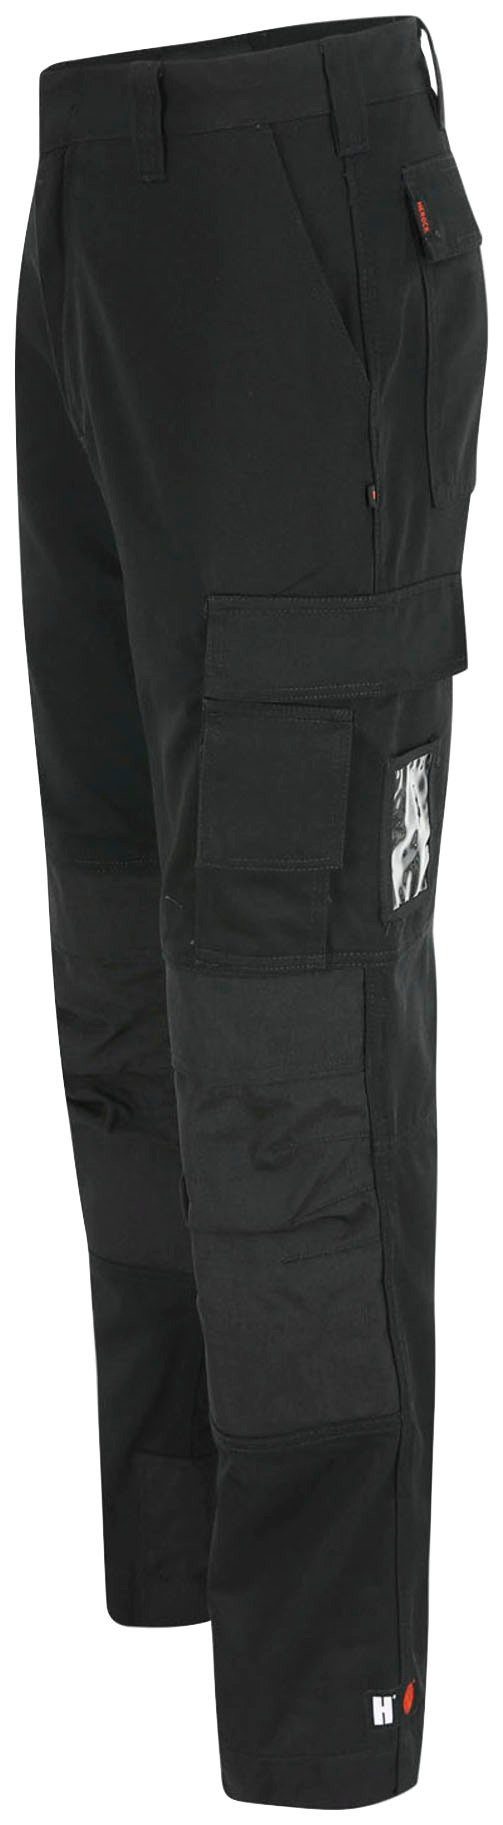 Herock 3-Naht, Arbeitshose HOSE schwarz TITAN SHORTLEG Taschen, angenehm wasserabweisend, Kurzgröβe, 12 sehr